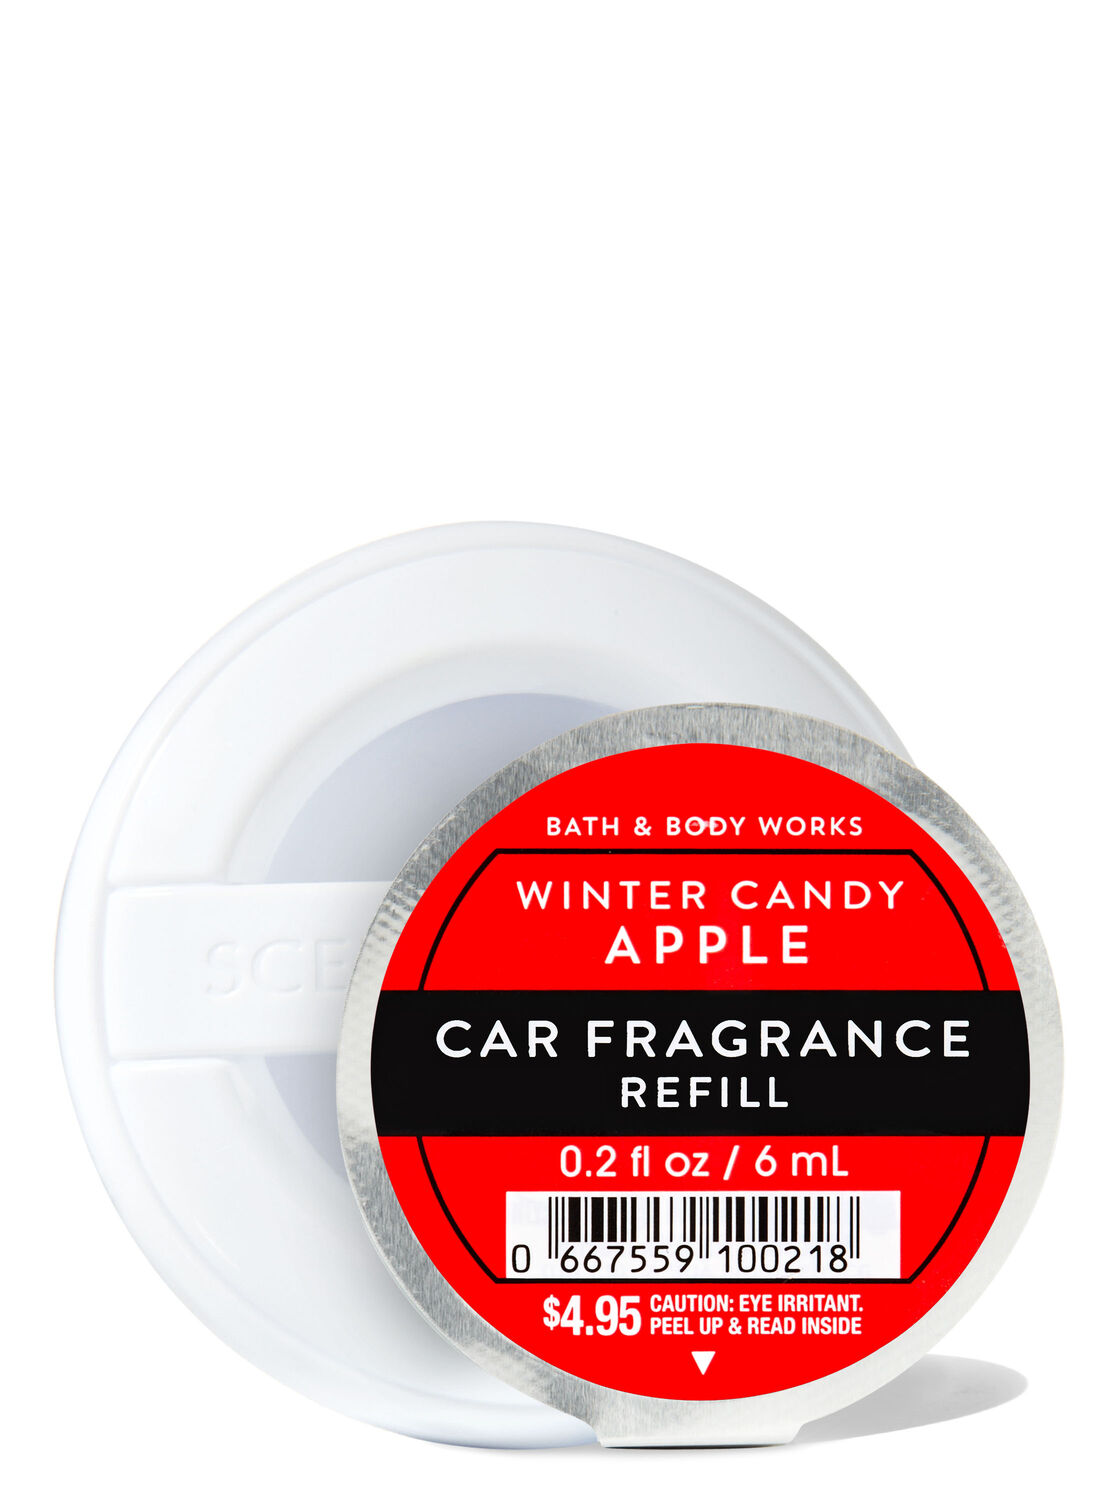 Refresh your car 4.5 oz gel, new car